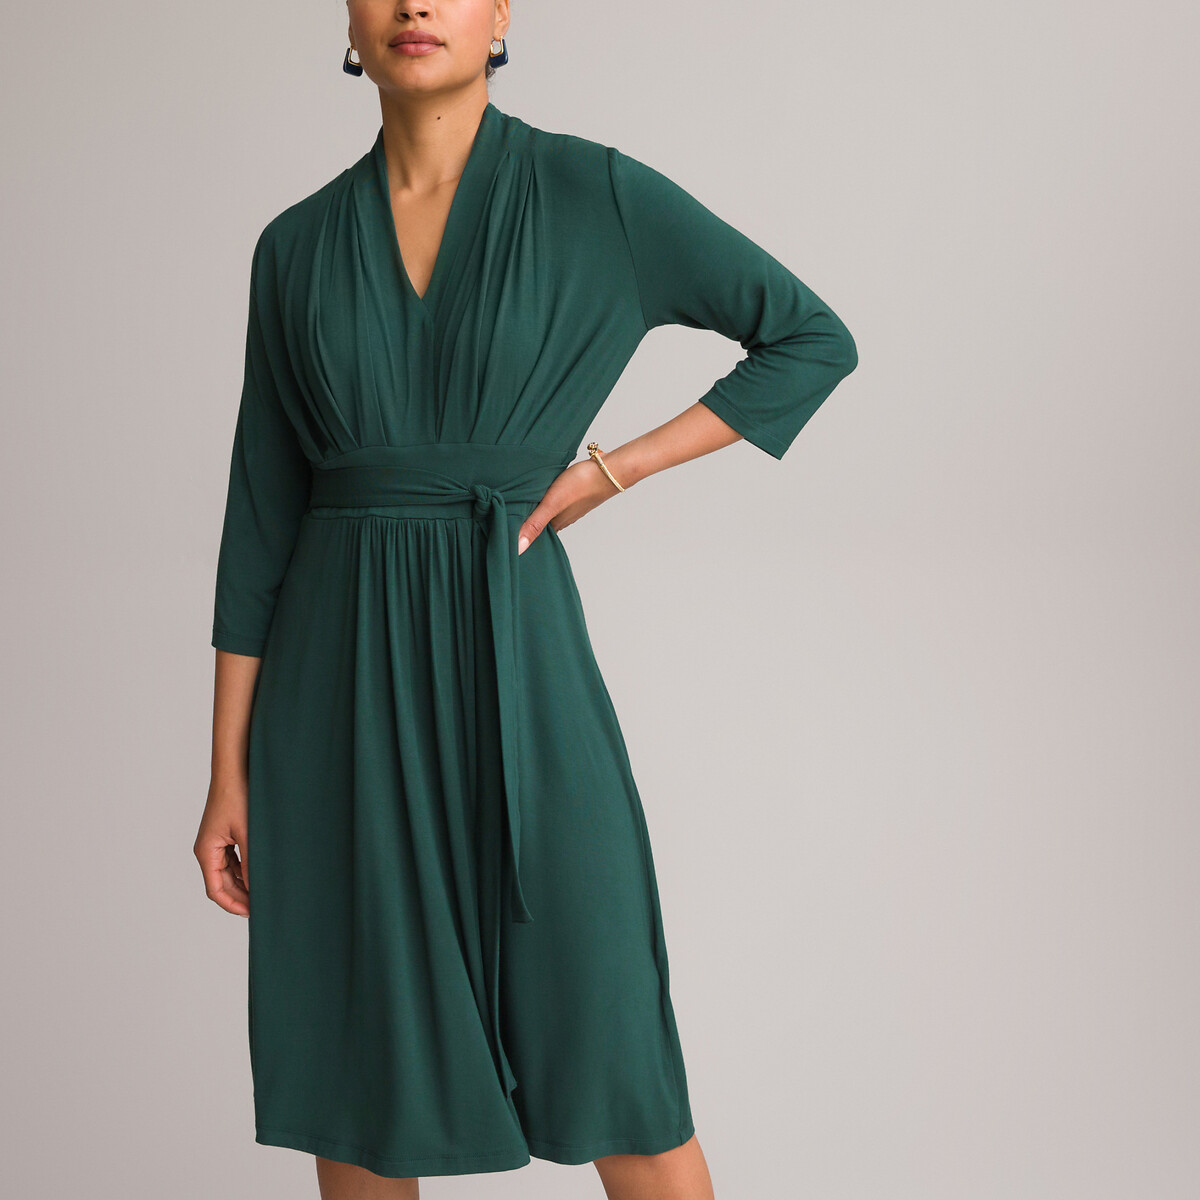 Платье ANNE WEYBURN Платье Расклешенное из струящегося трикотажа с рукавами 34 42 зеленый, размер 42 - фото 2